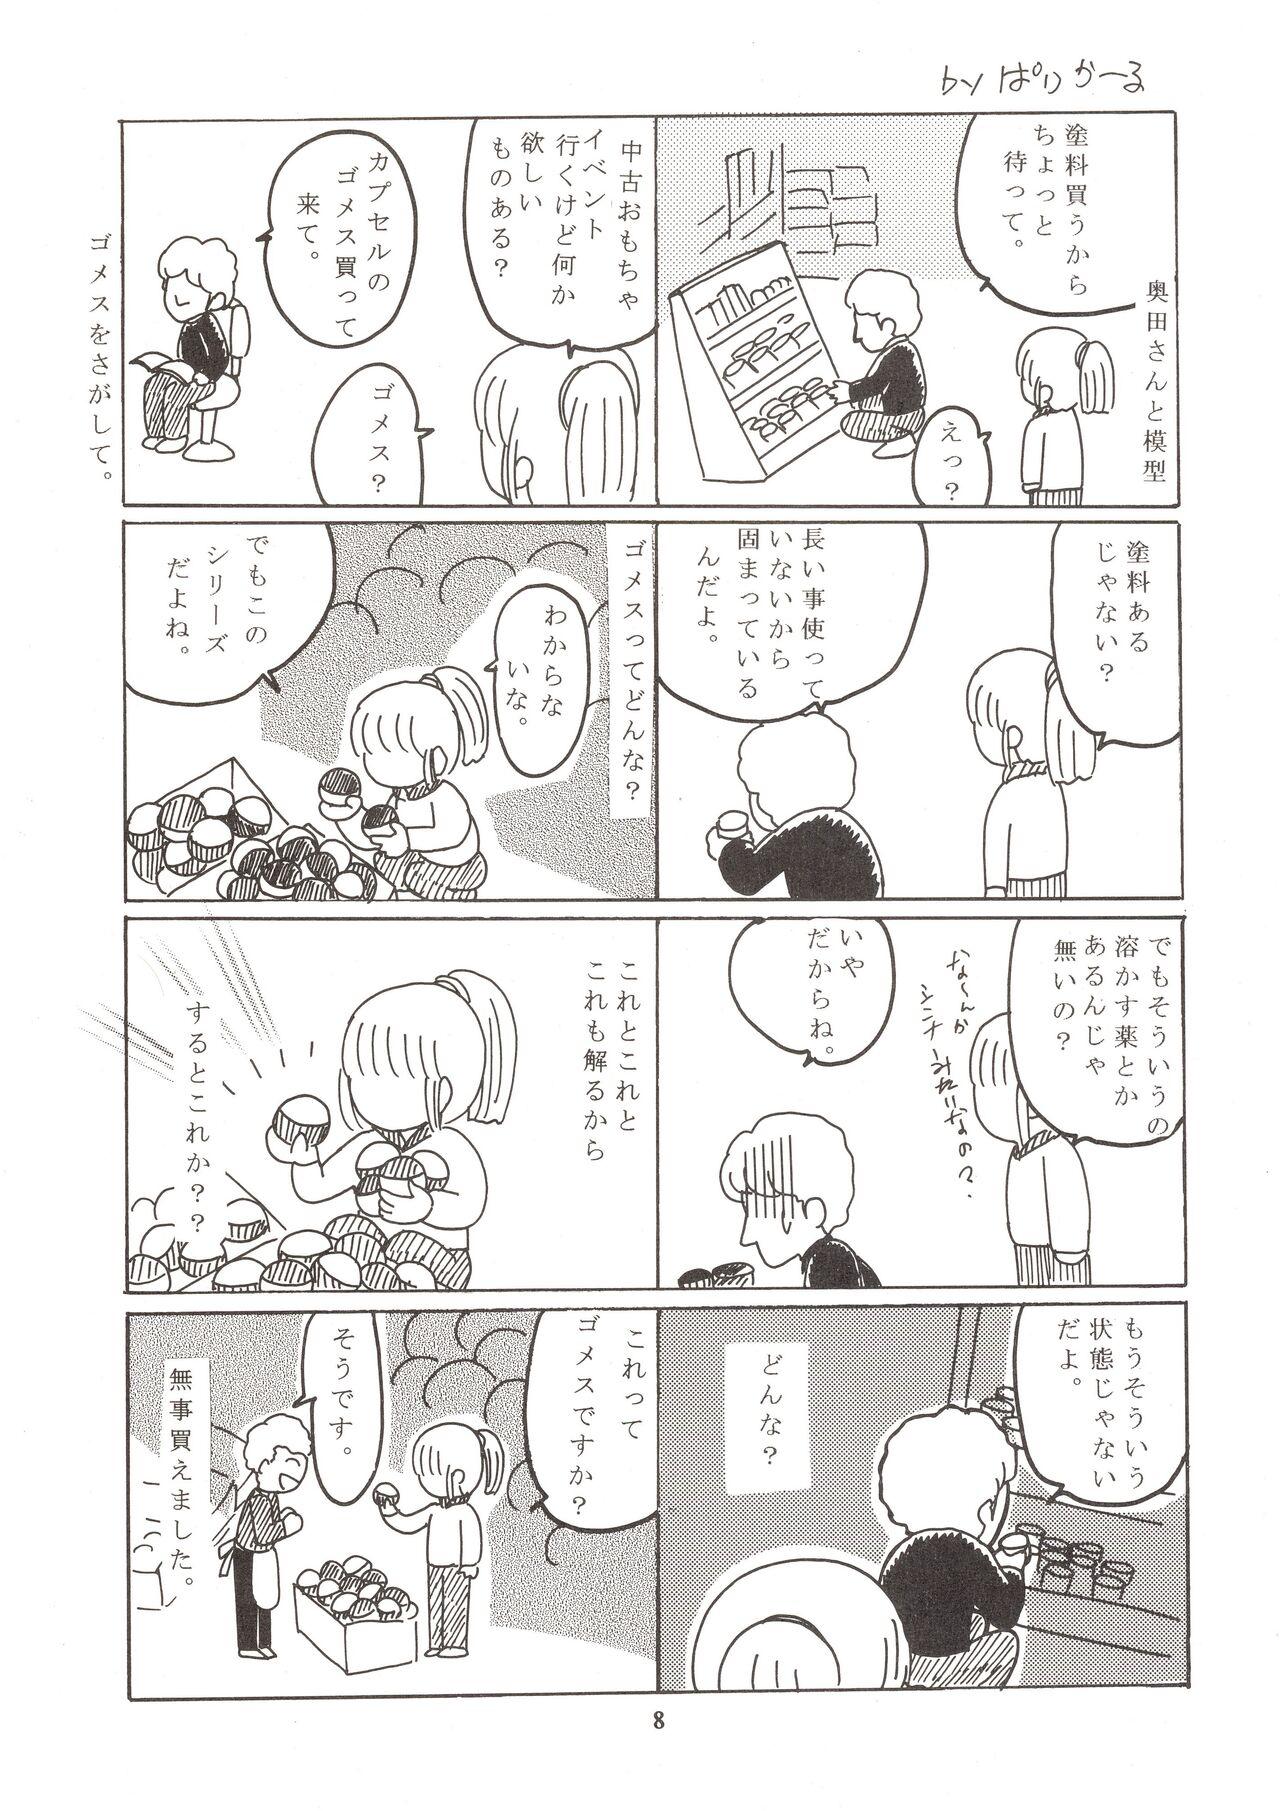 Hairypussy Jun's GXP Okuda Jun Sakuga Nokiroku - Tenchi muyo gxp Nalgas - Page 8